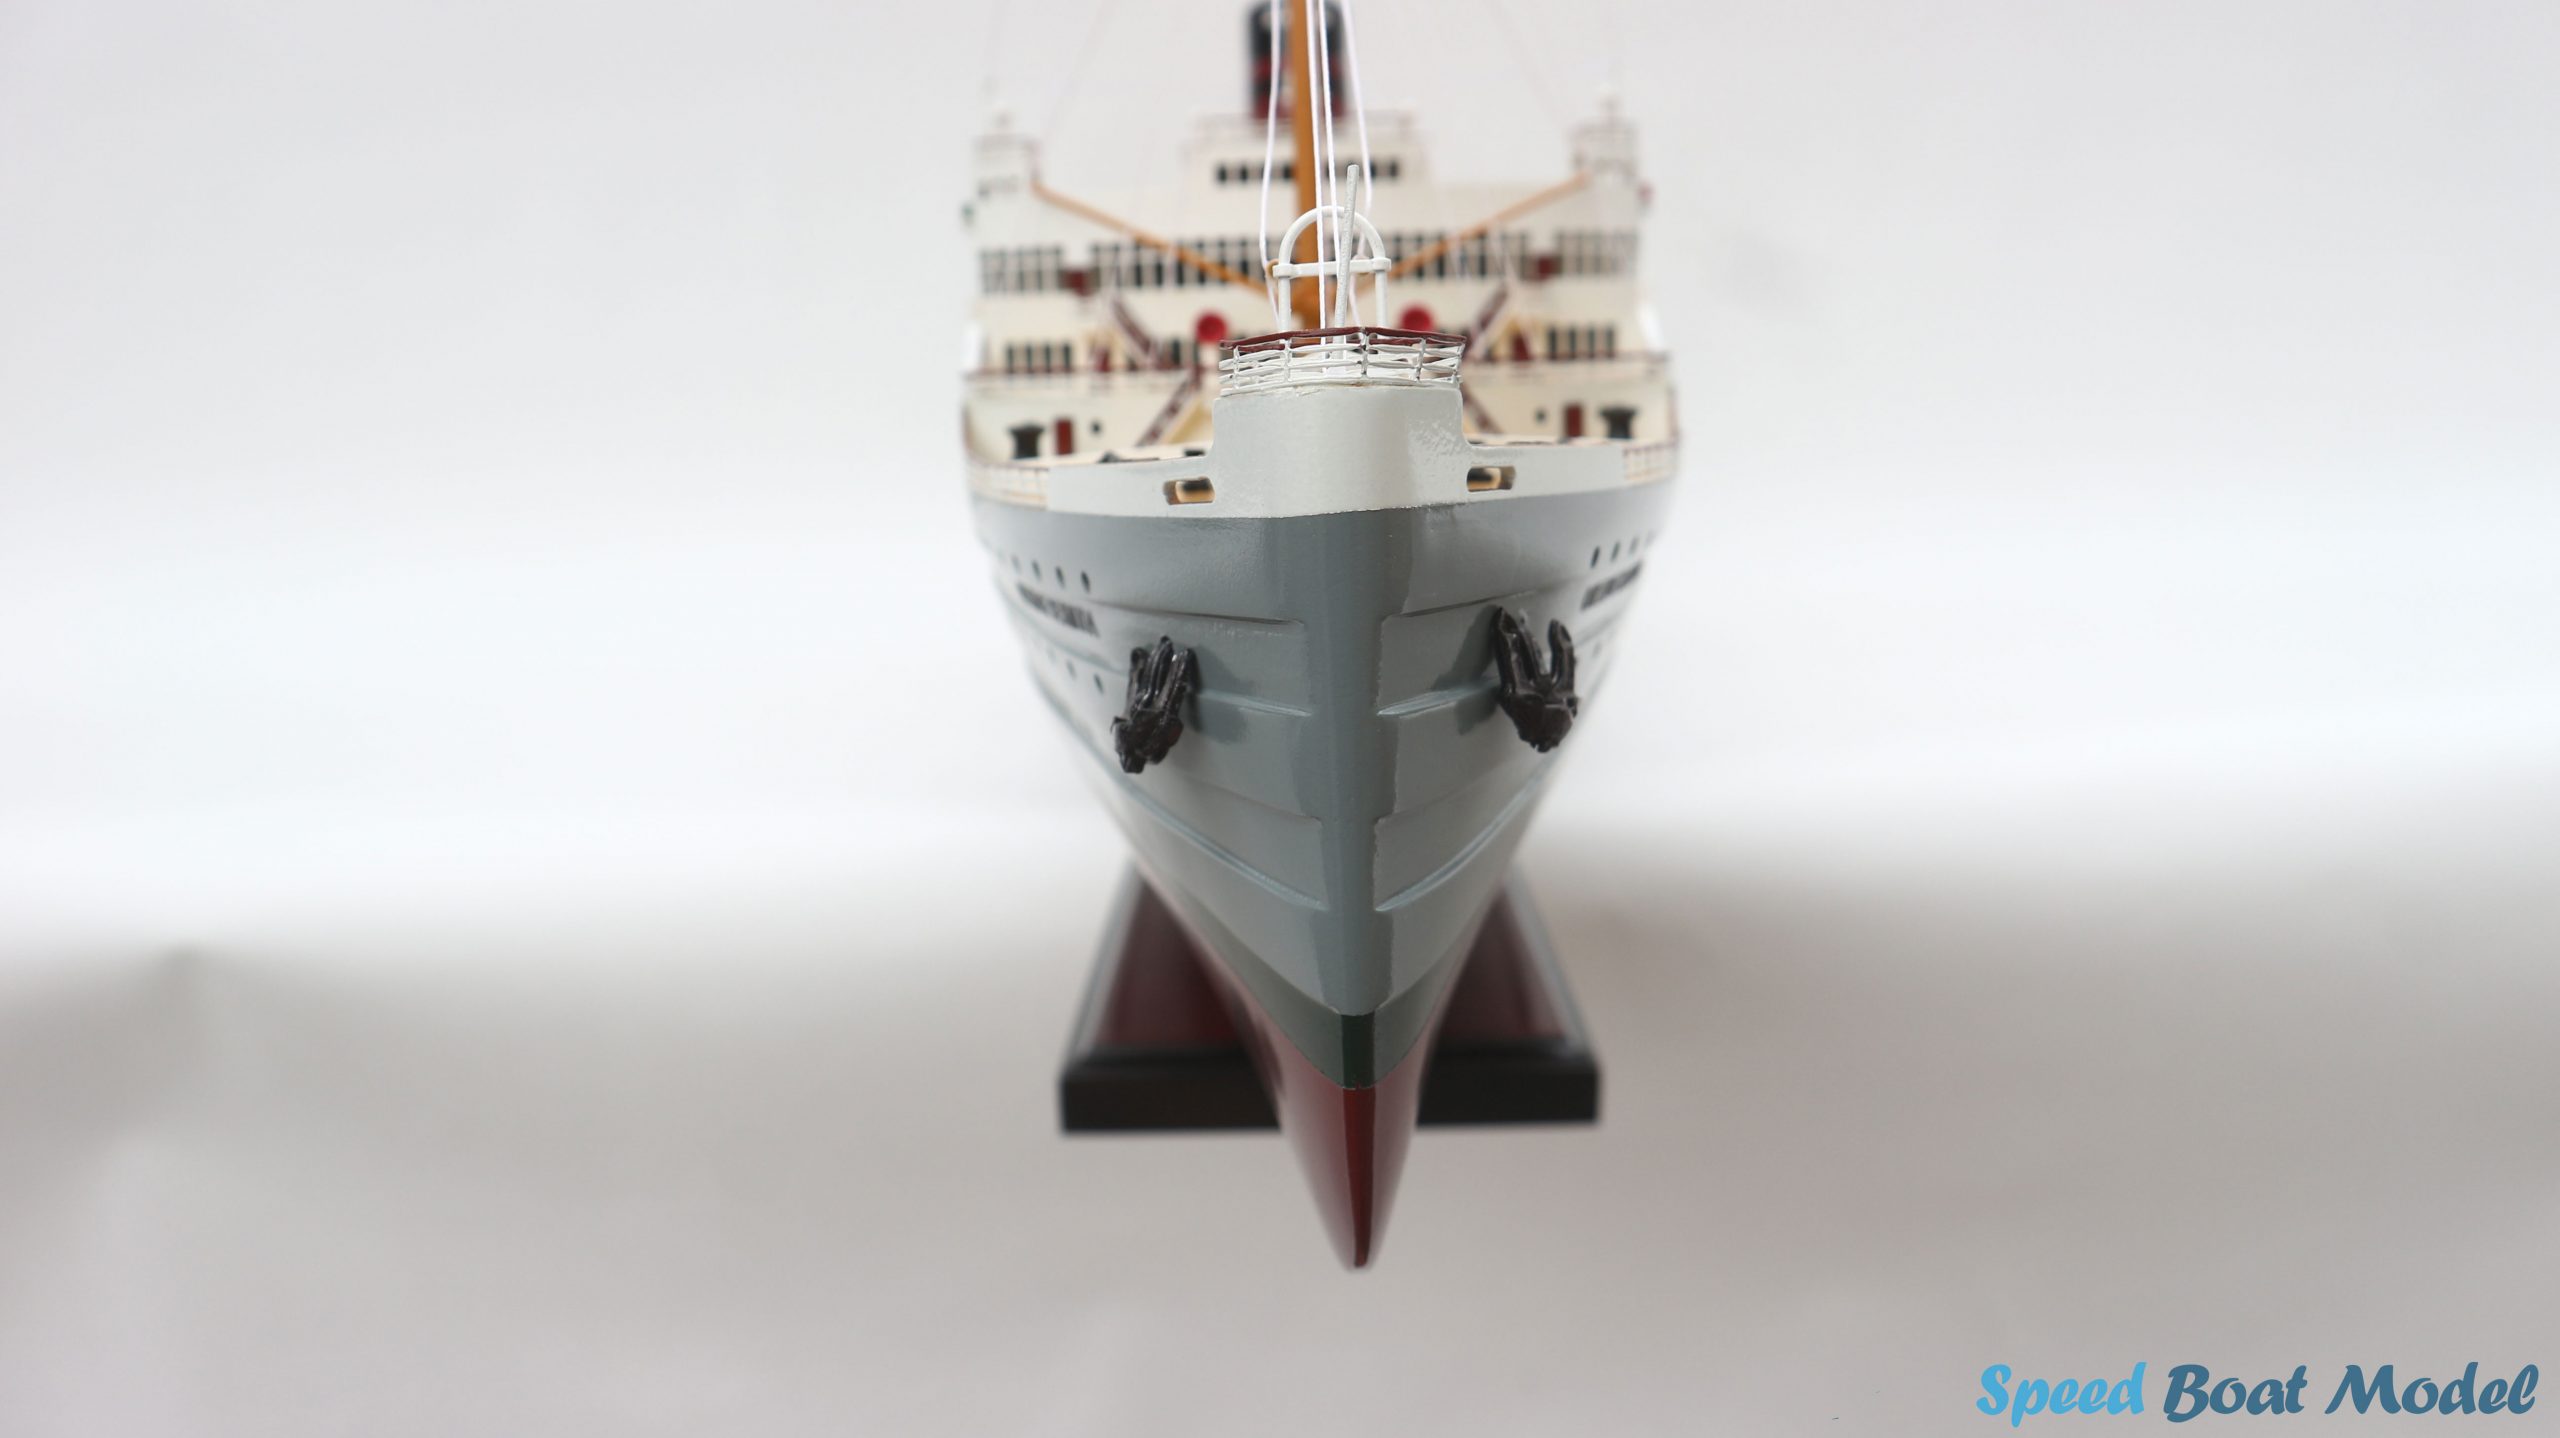 SS Queen of Bermuda Cruise Ship Model 39.3"